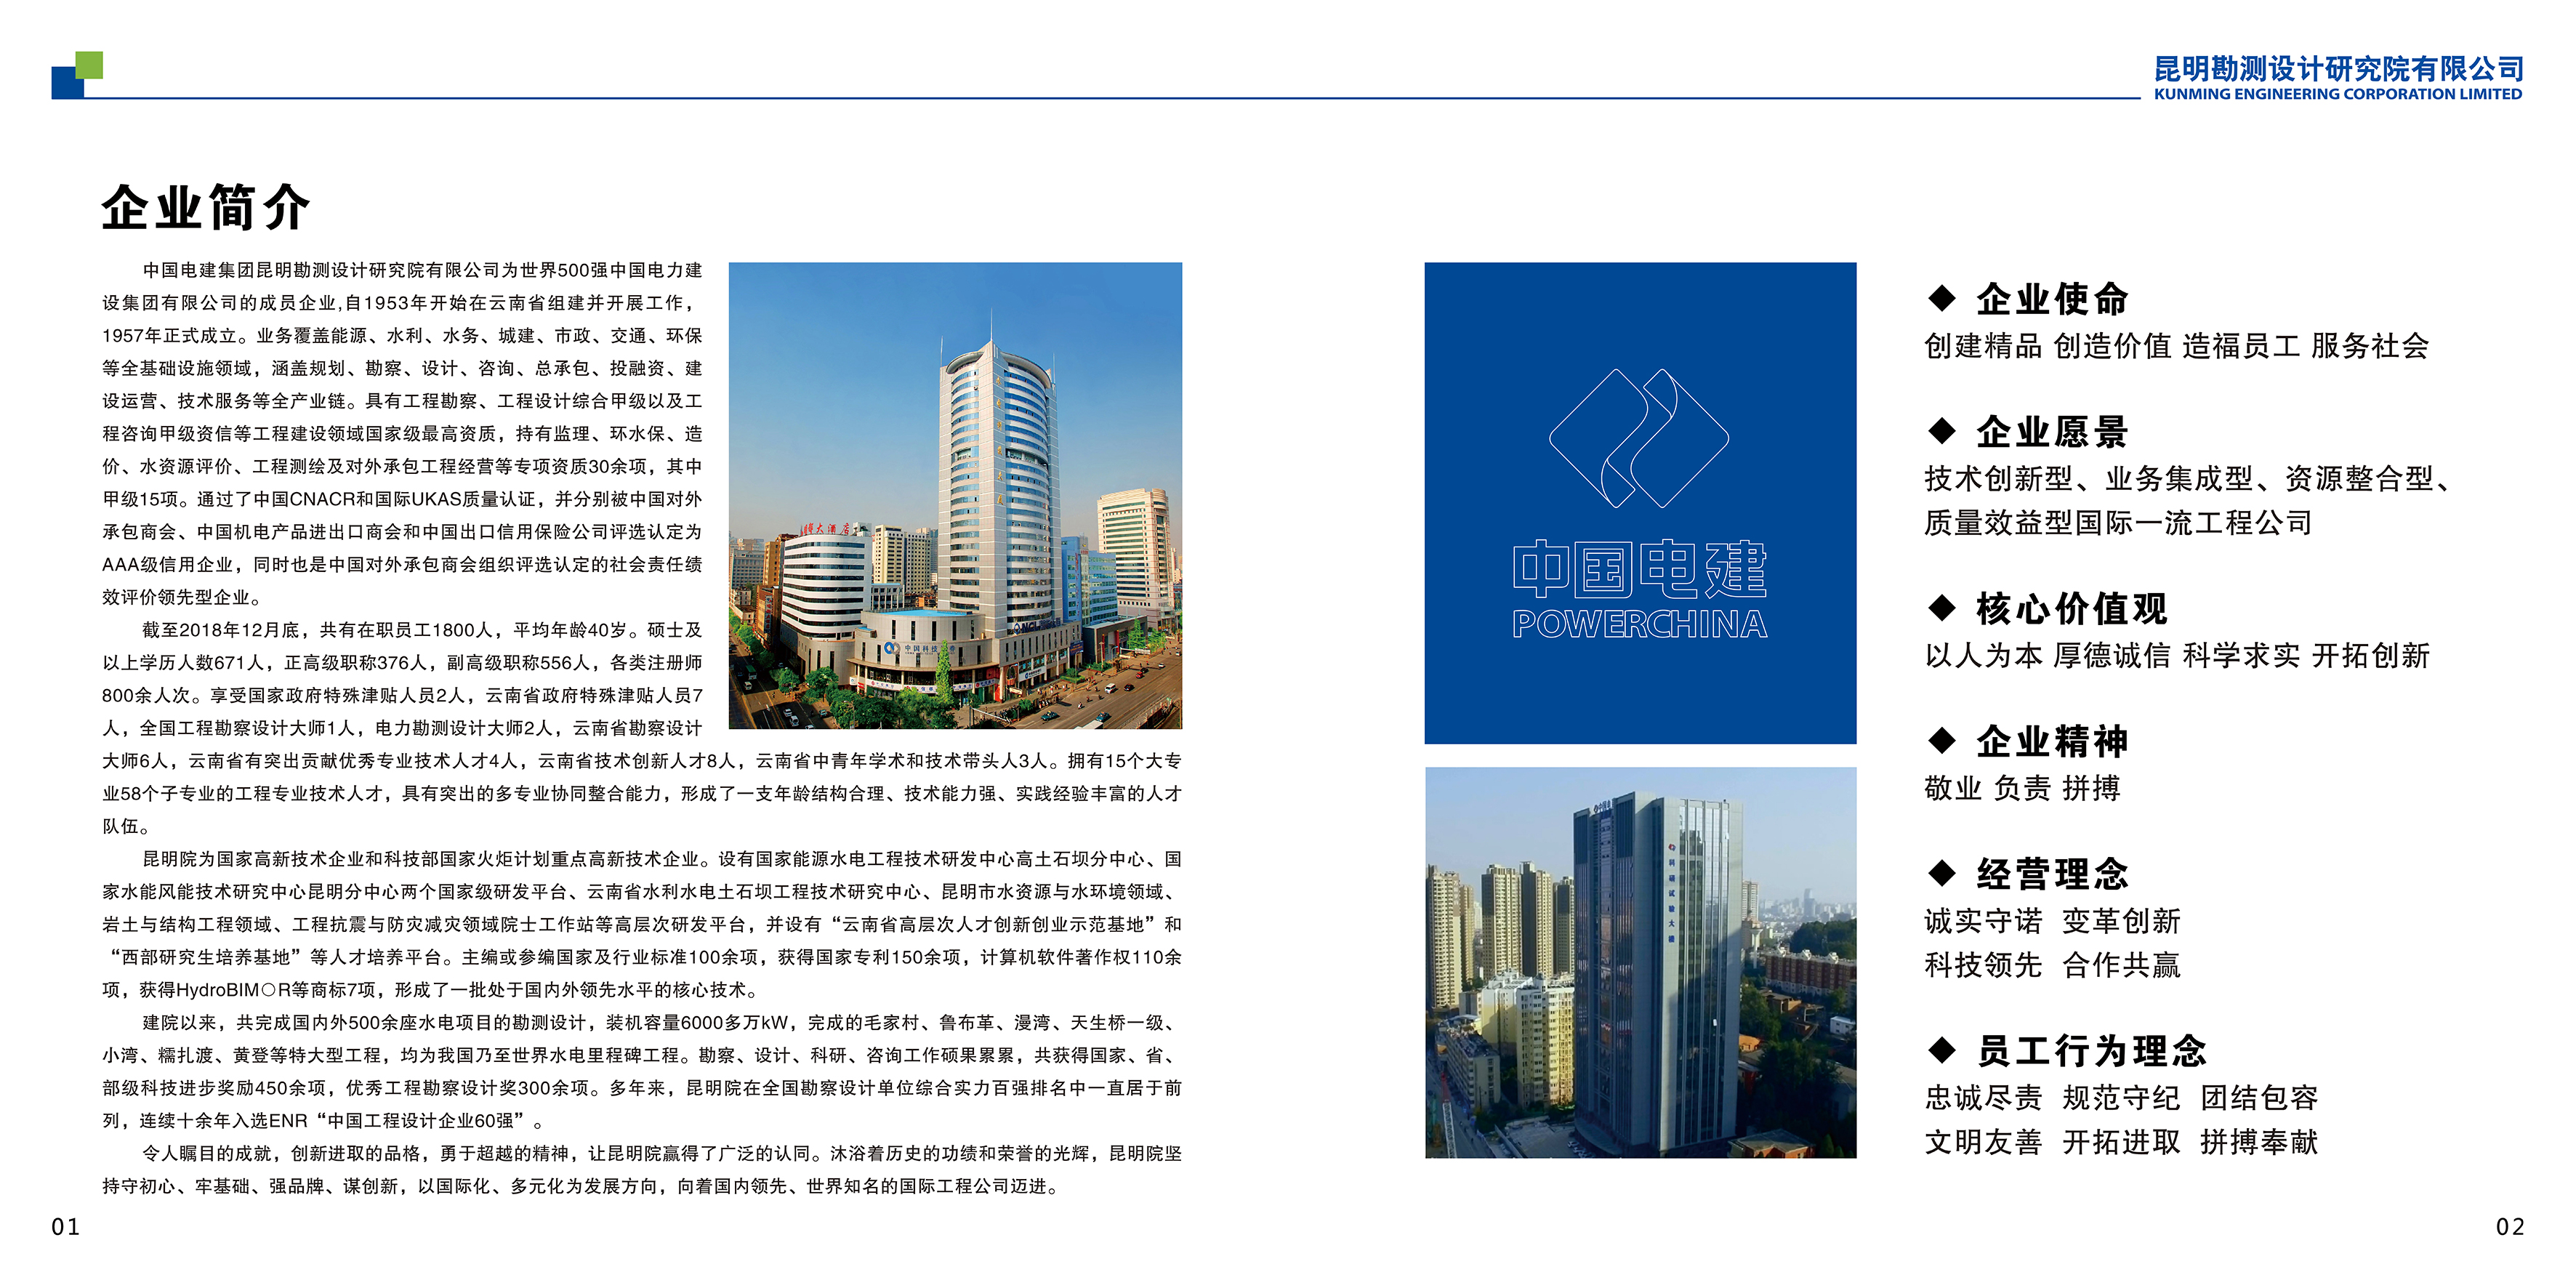 三、中国电建集团昆明勘测设计研究院宣传画册_4.png